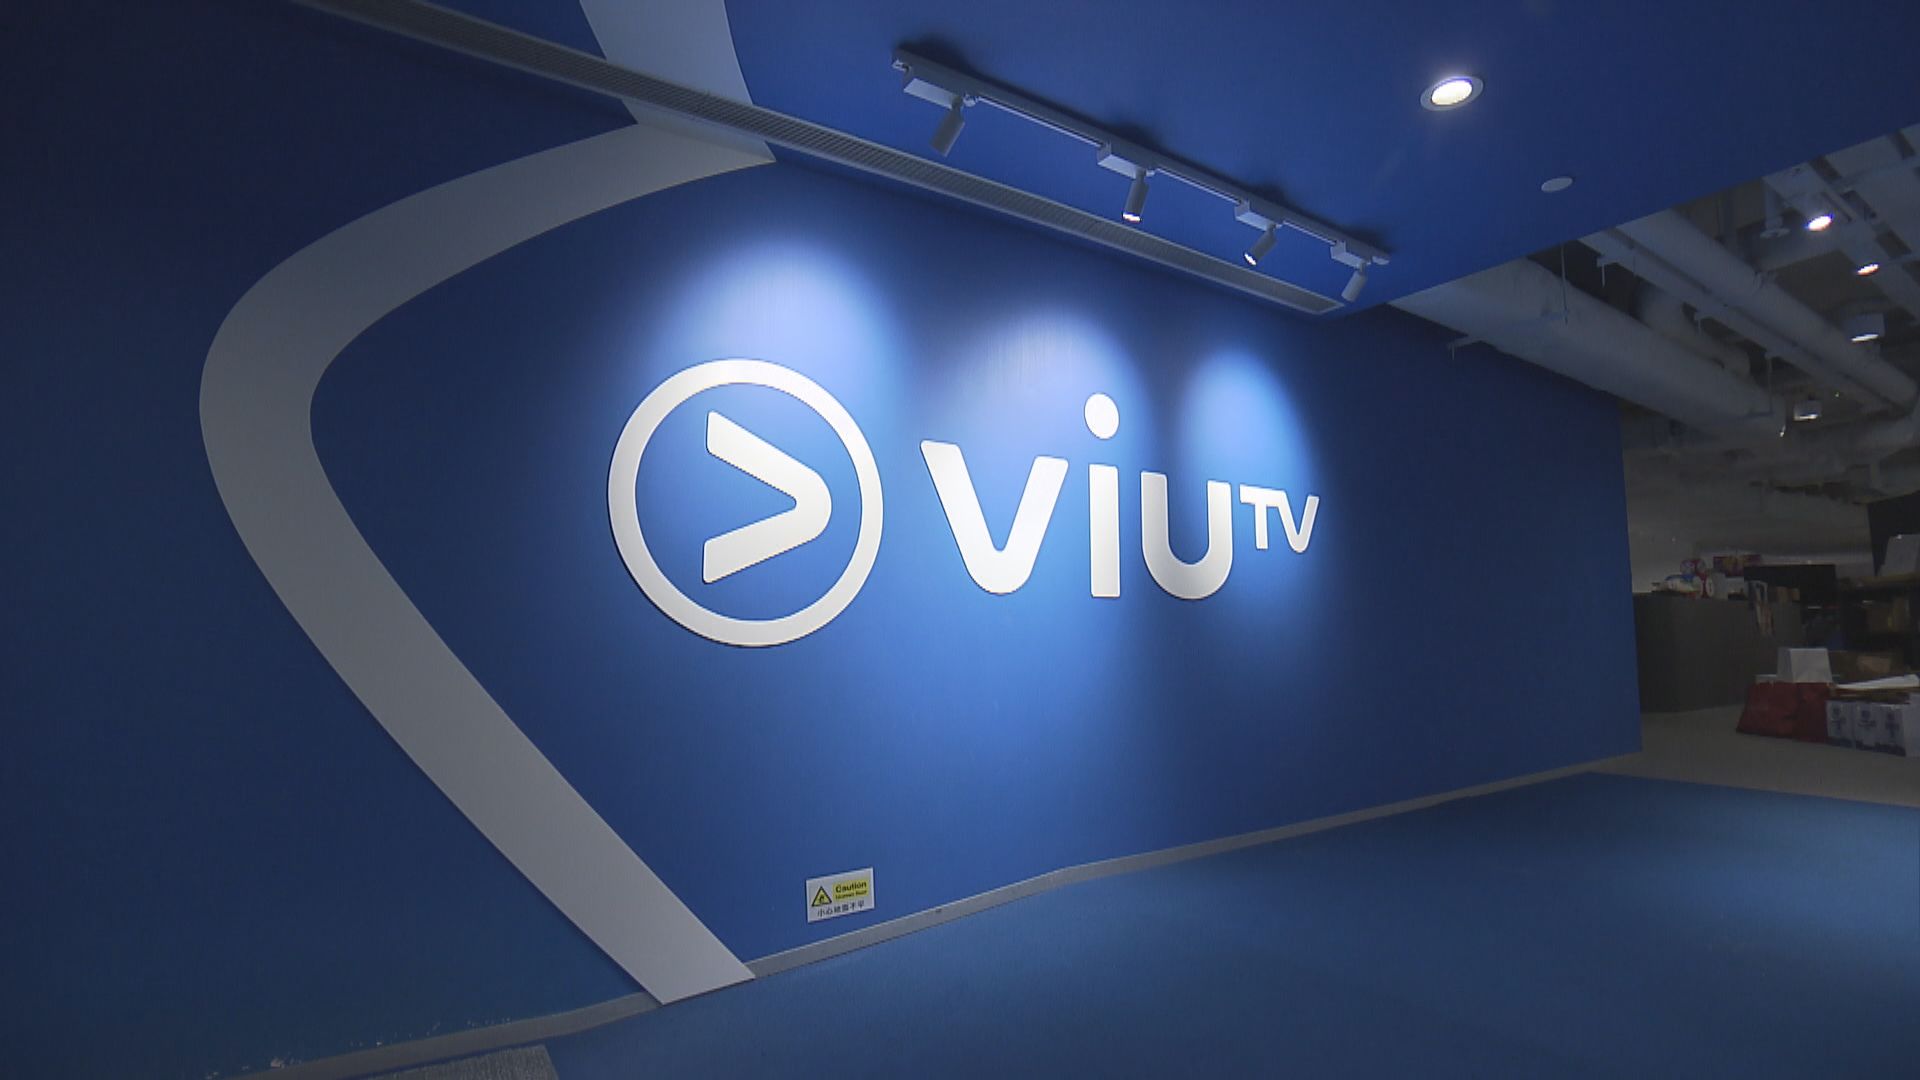 【免費播奧運】ViuTV︰為觀眾帶來最廣泛及多元化觀賞體驗 